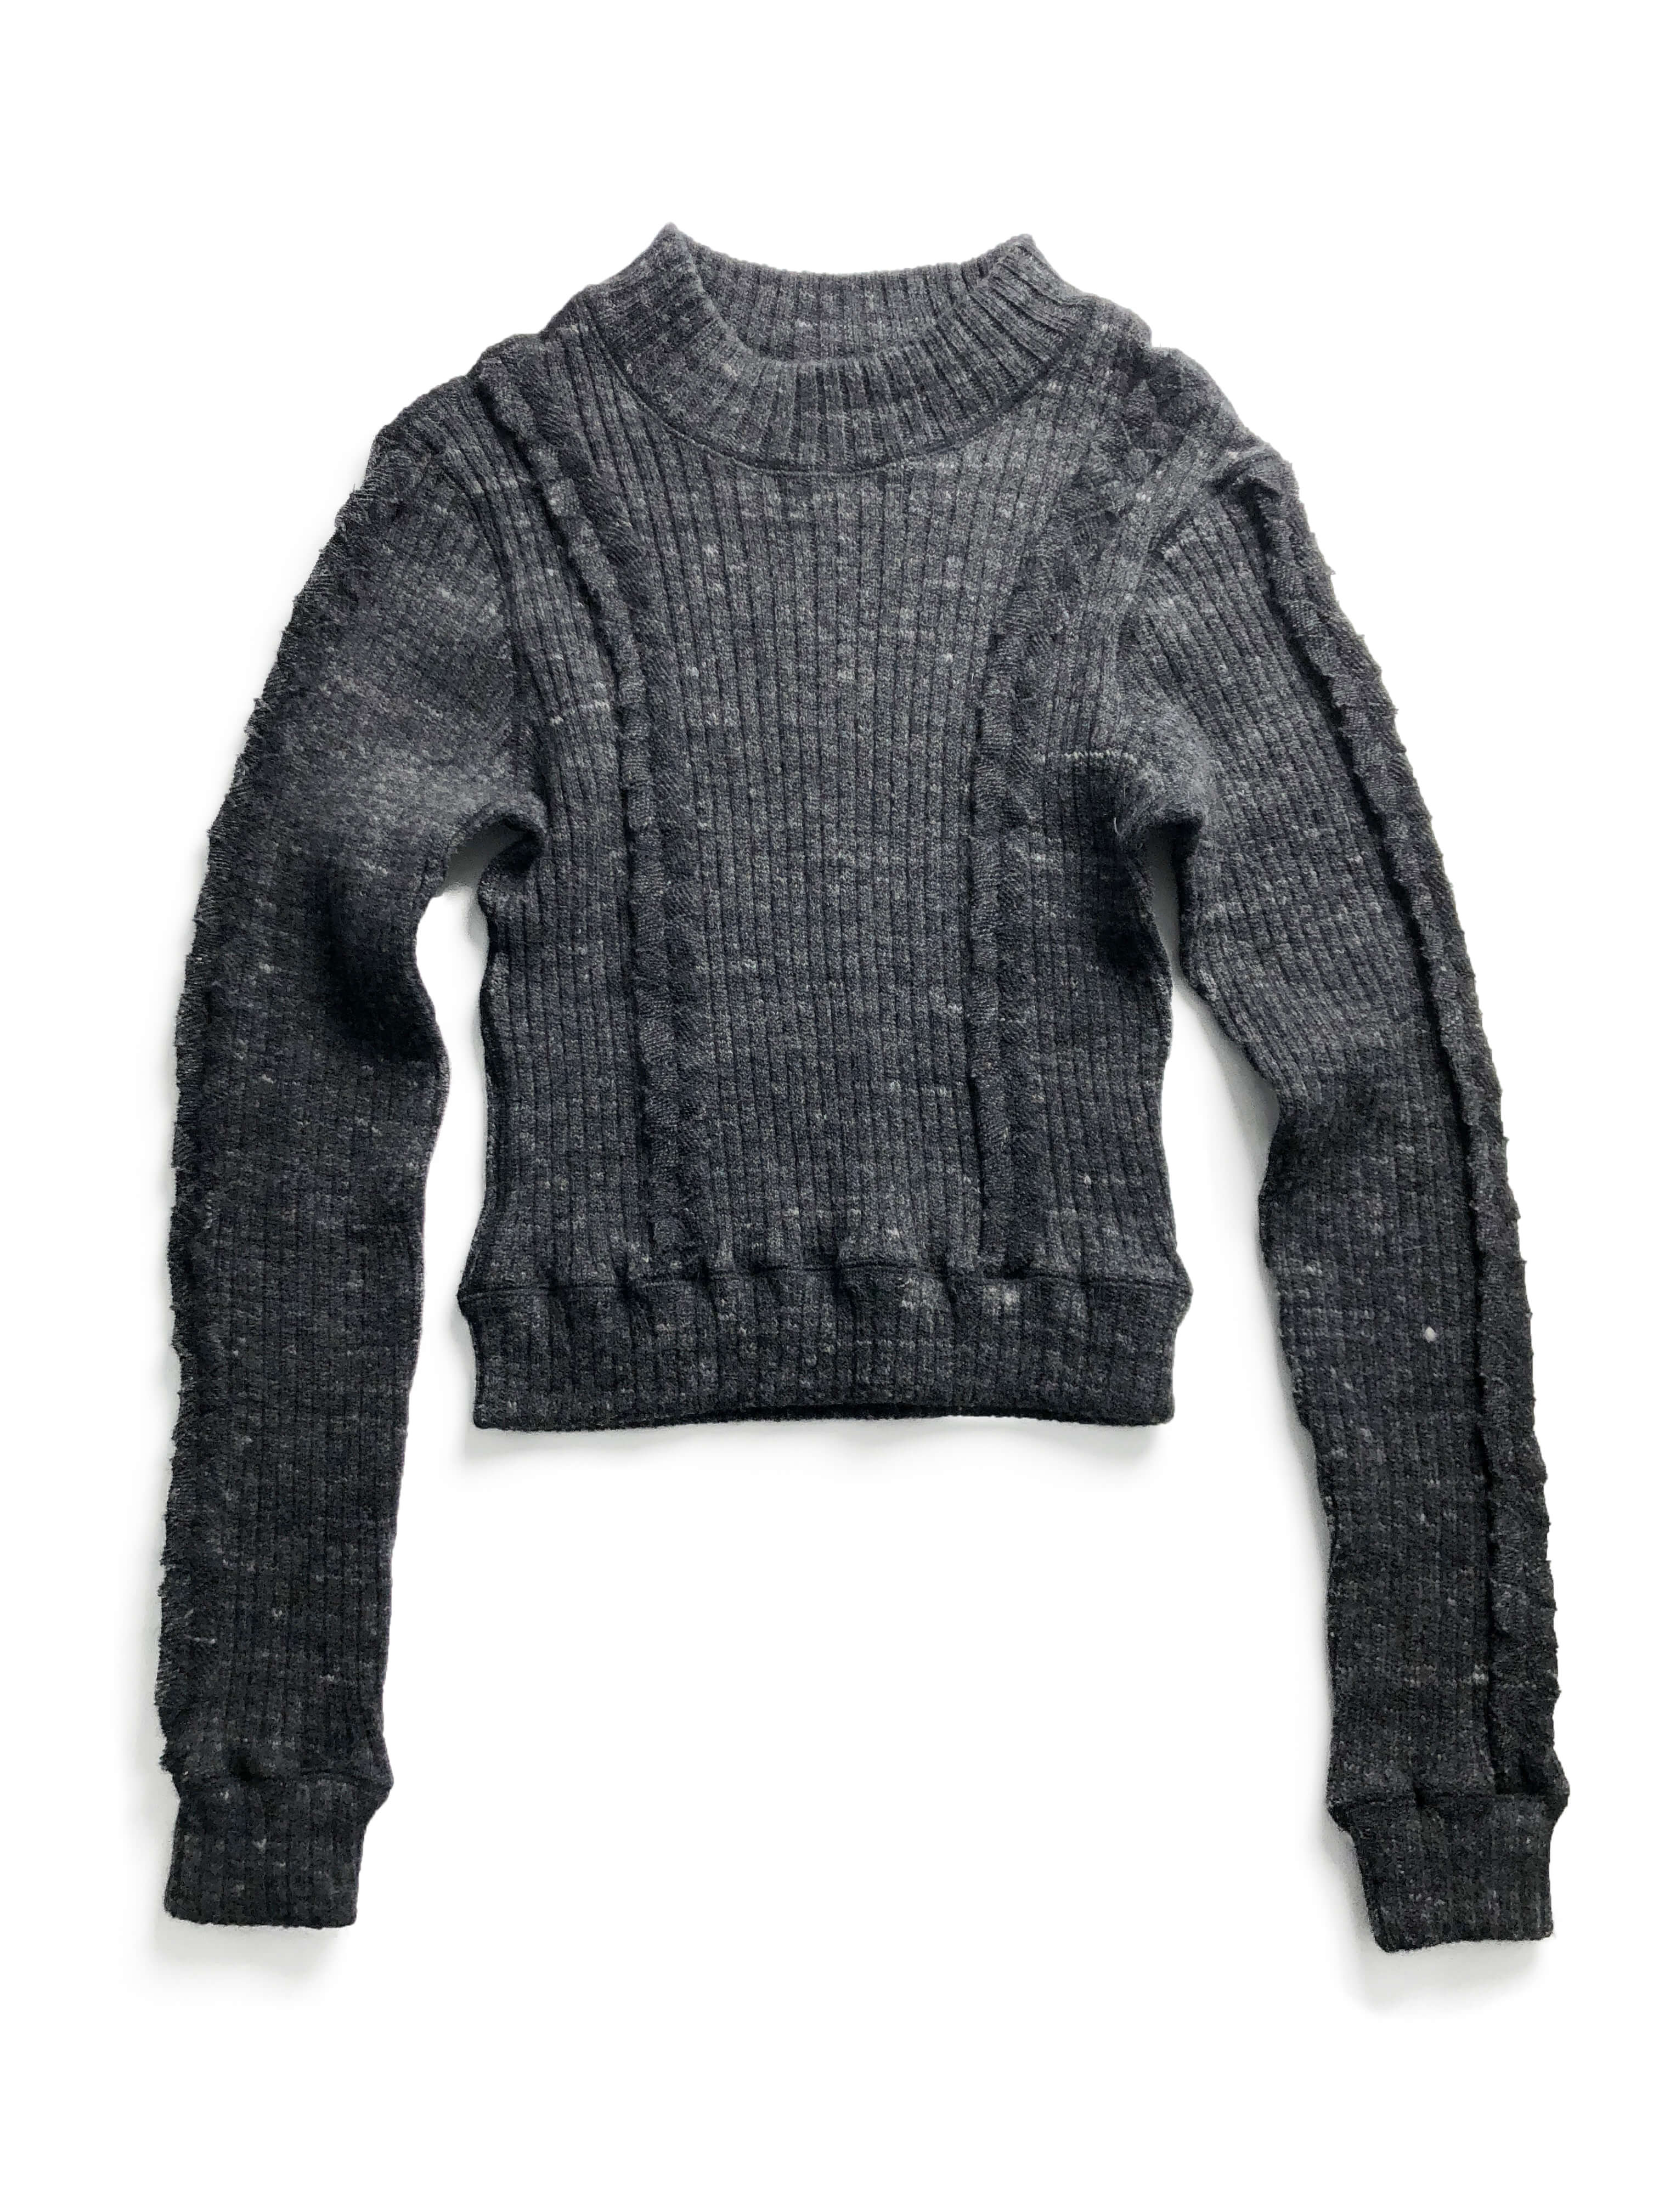 K・ZELLE sweater